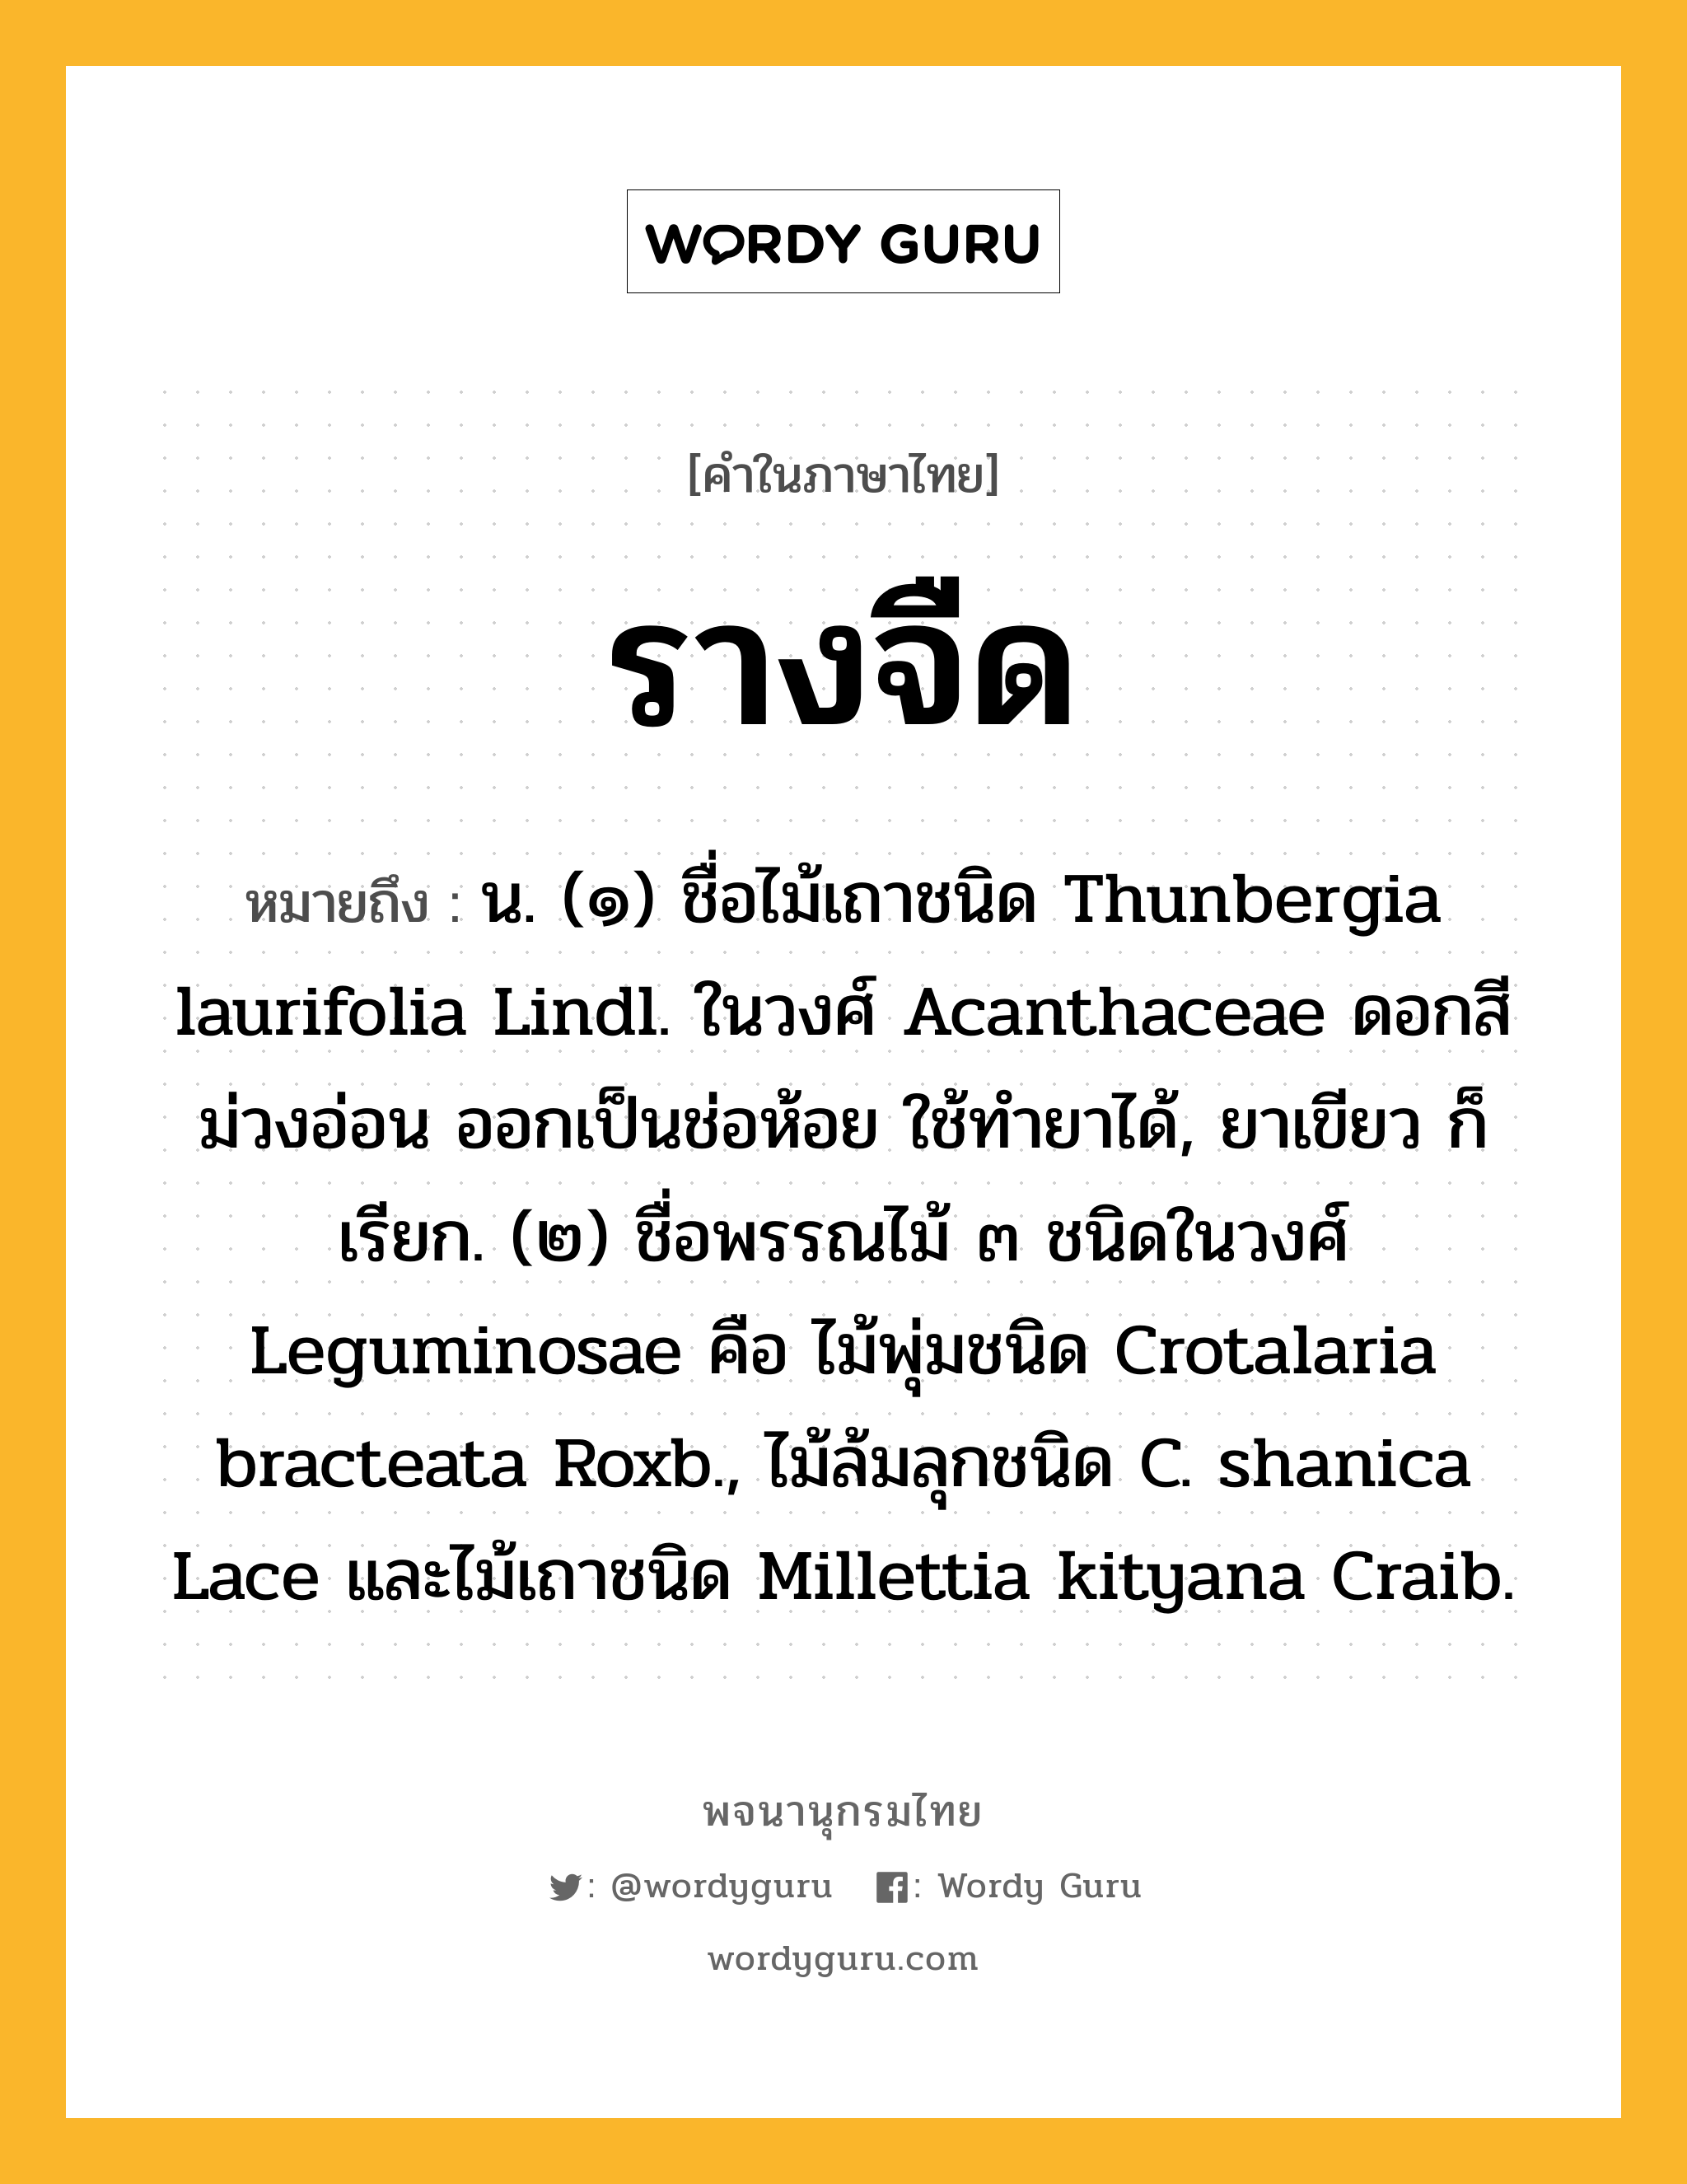 รางจืด ความหมาย หมายถึงอะไร?, คำในภาษาไทย รางจืด หมายถึง น. (๑) ชื่อไม้เถาชนิด Thunbergia laurifolia Lindl. ในวงศ์ Acanthaceae ดอกสีม่วงอ่อน ออกเป็นช่อห้อย ใช้ทํายาได้, ยาเขียว ก็เรียก. (๒) ชื่อพรรณไม้ ๓ ชนิดในวงศ์ Leguminosae คือ ไม้พุ่มชนิด Crotalaria bracteata Roxb., ไม้ล้มลุกชนิด C. shanica Lace และไม้เถาชนิด Millettia kityana Craib.